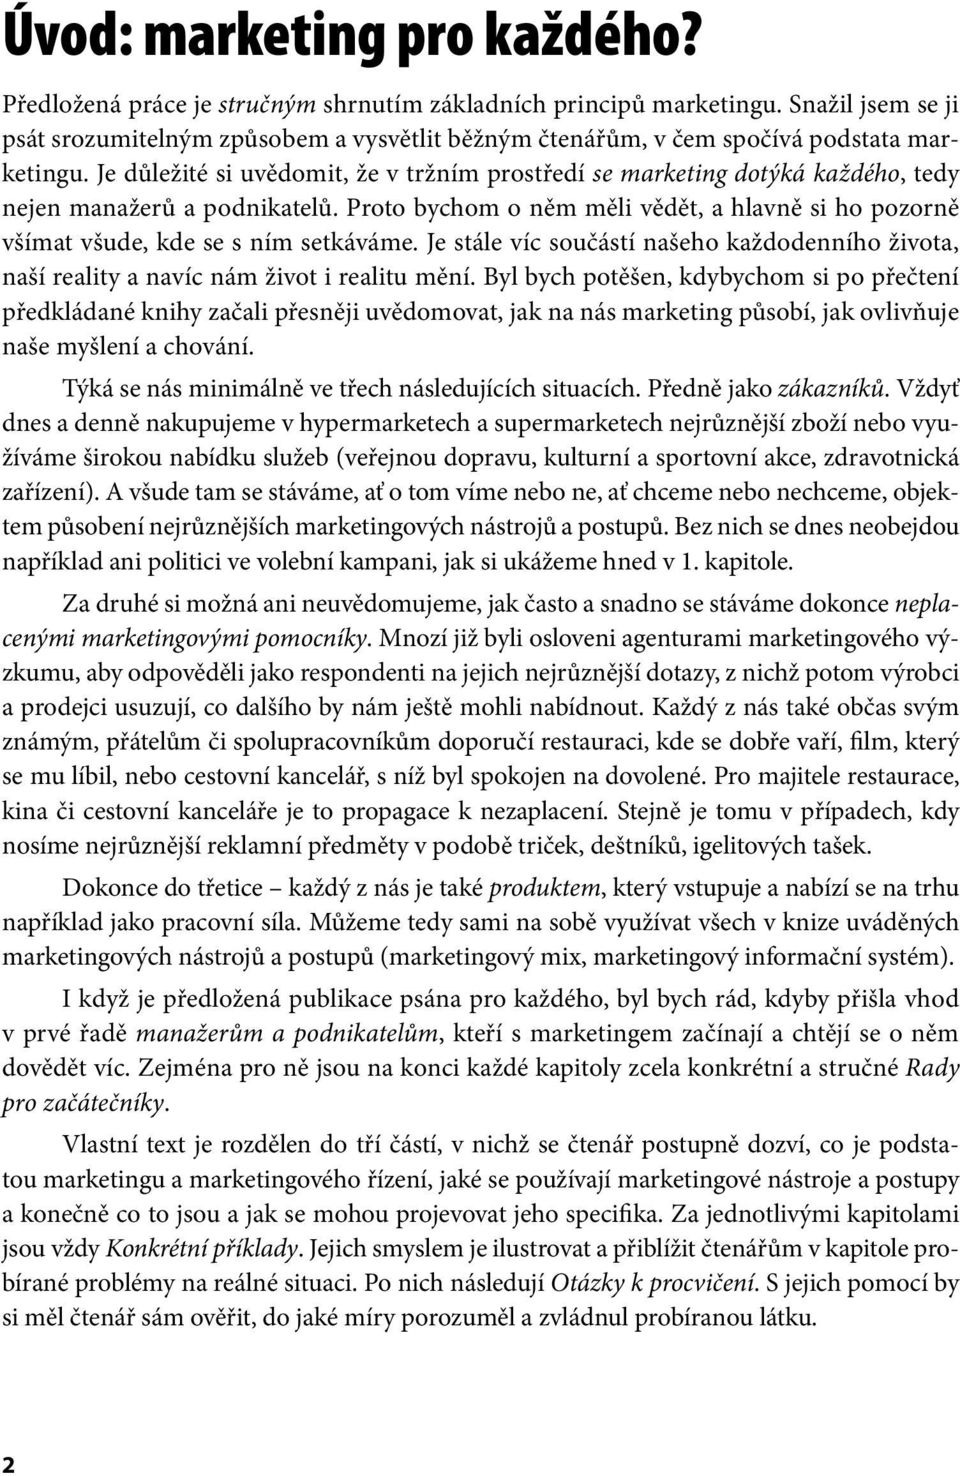 Miroslav Foret. Marketing pro začátečníky - PDF Free Download